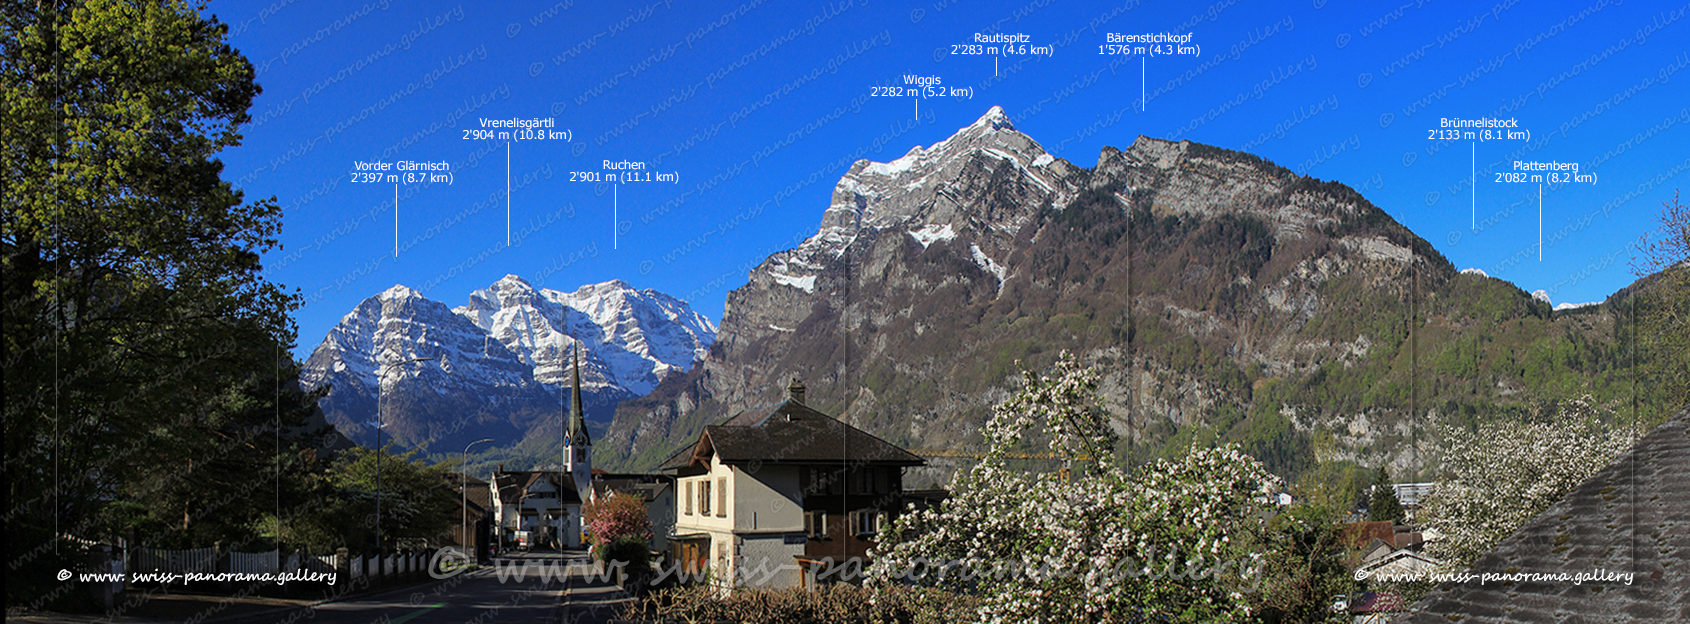 Schweizer Alpenpanorama Mollis Kanton Glarus Glärnisch Swiss-panorama.gallery